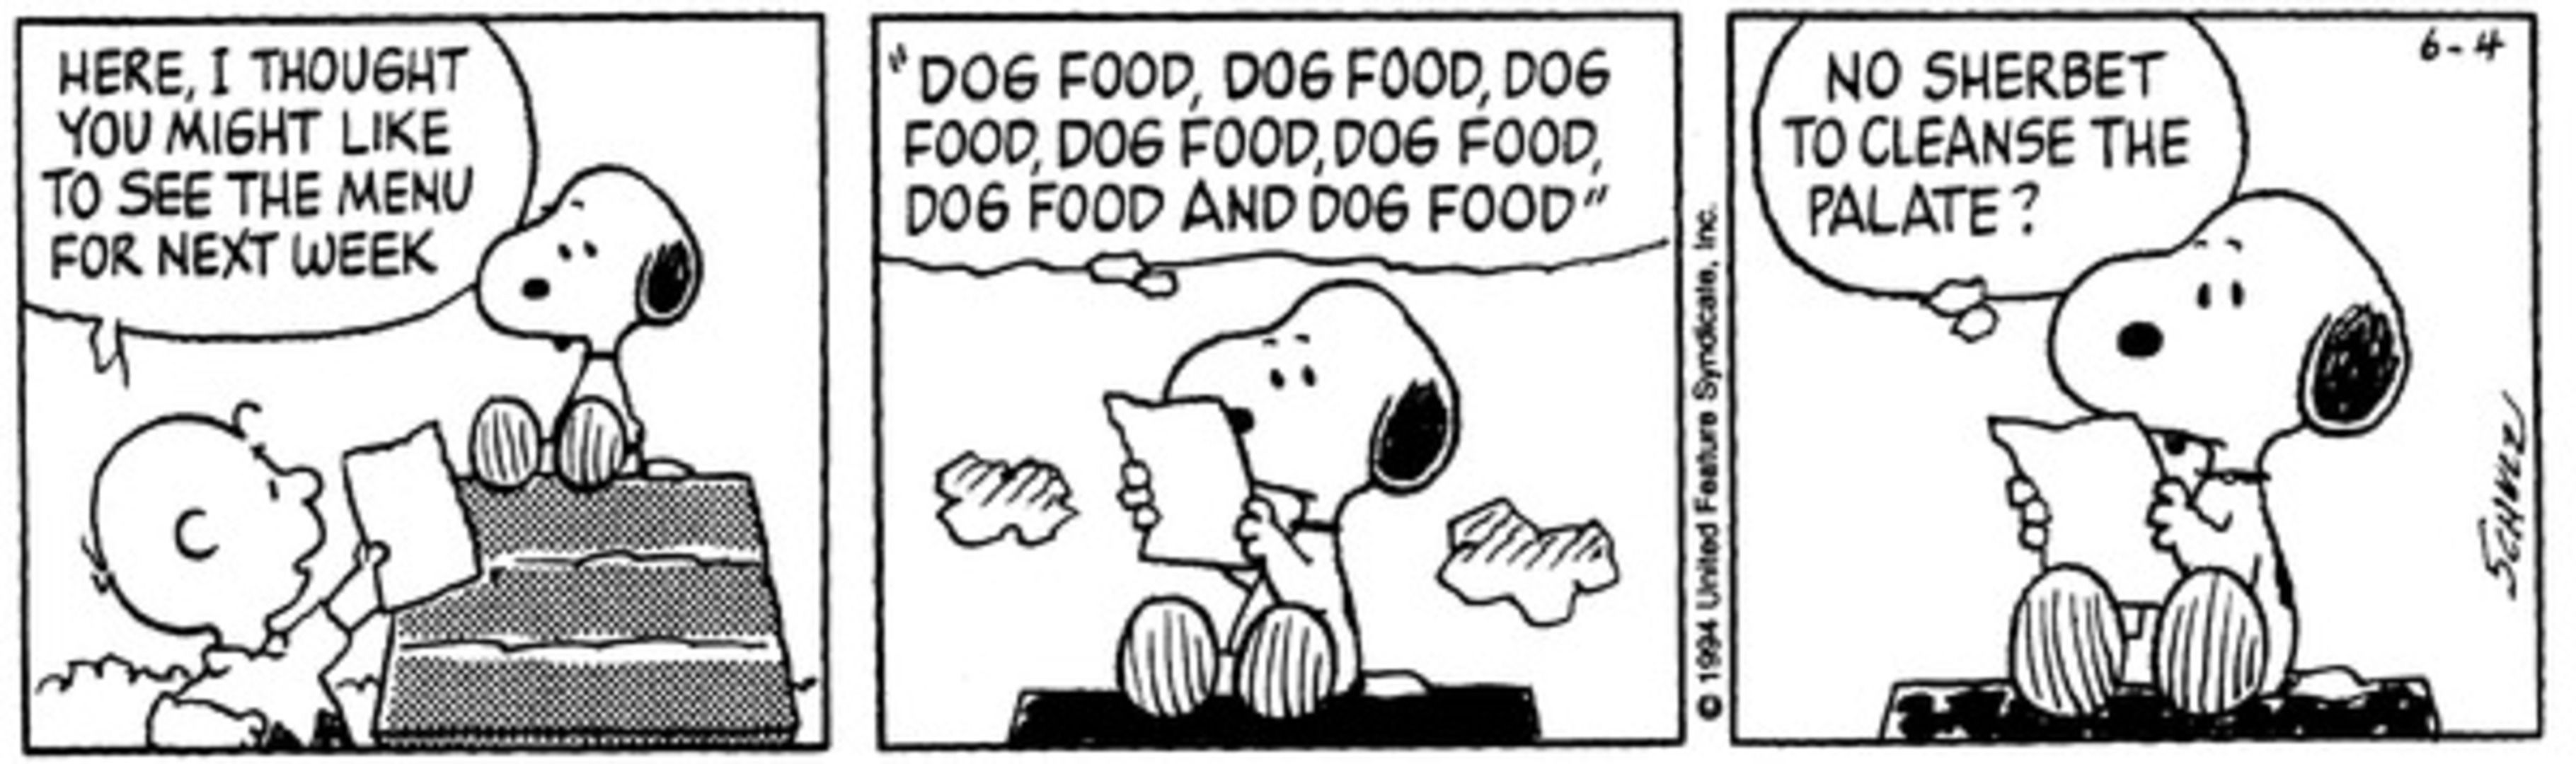 Snoopy recebendo um cardápio semanal de Charlie Brown, listando apenas comida para cachorro.